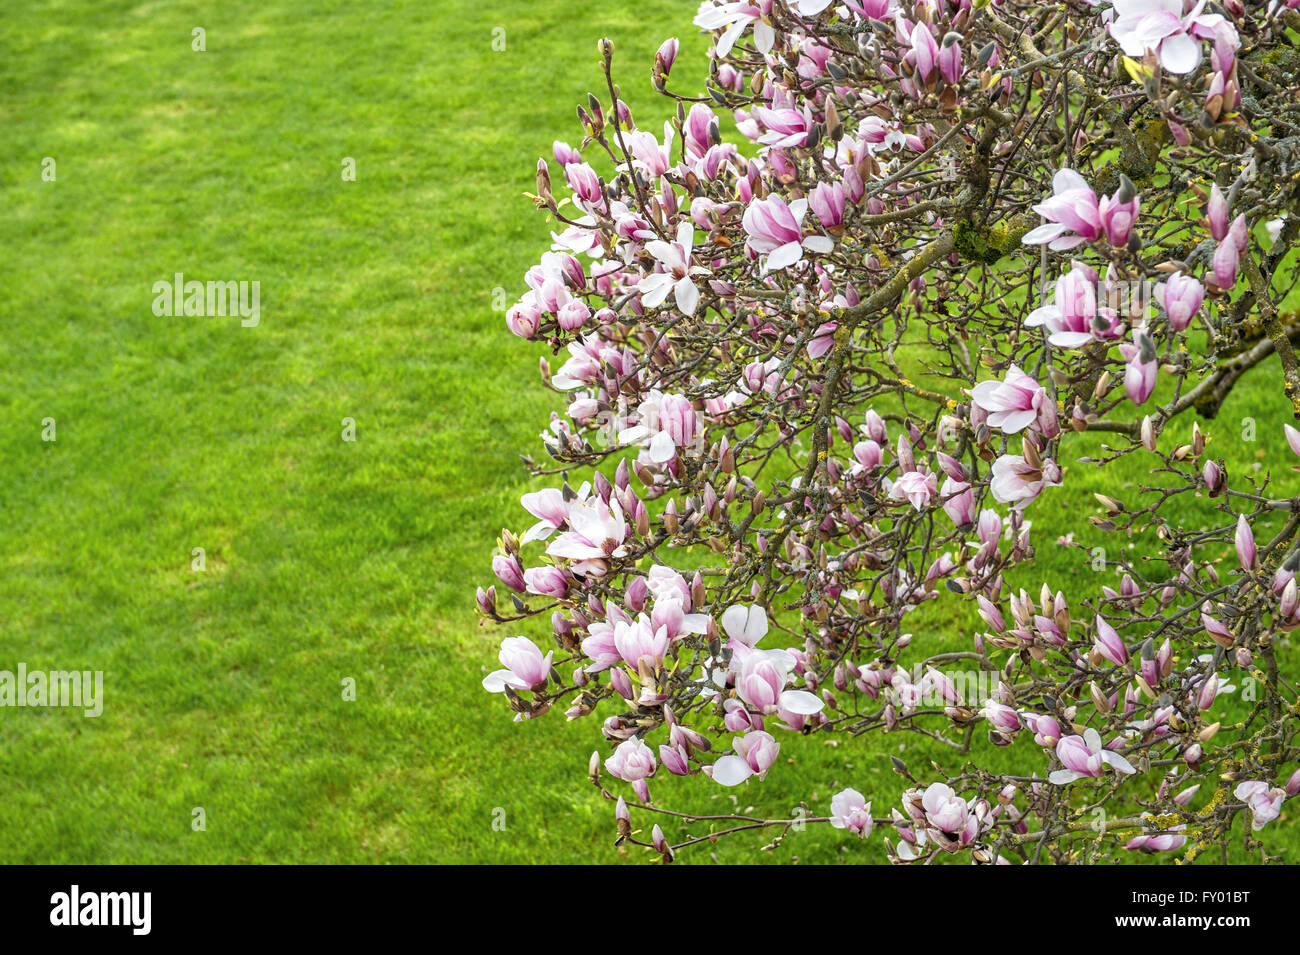 Blüte der Magnolie. Frühlingsblumen auf Naturrasen grün Hintergrund Stockfoto